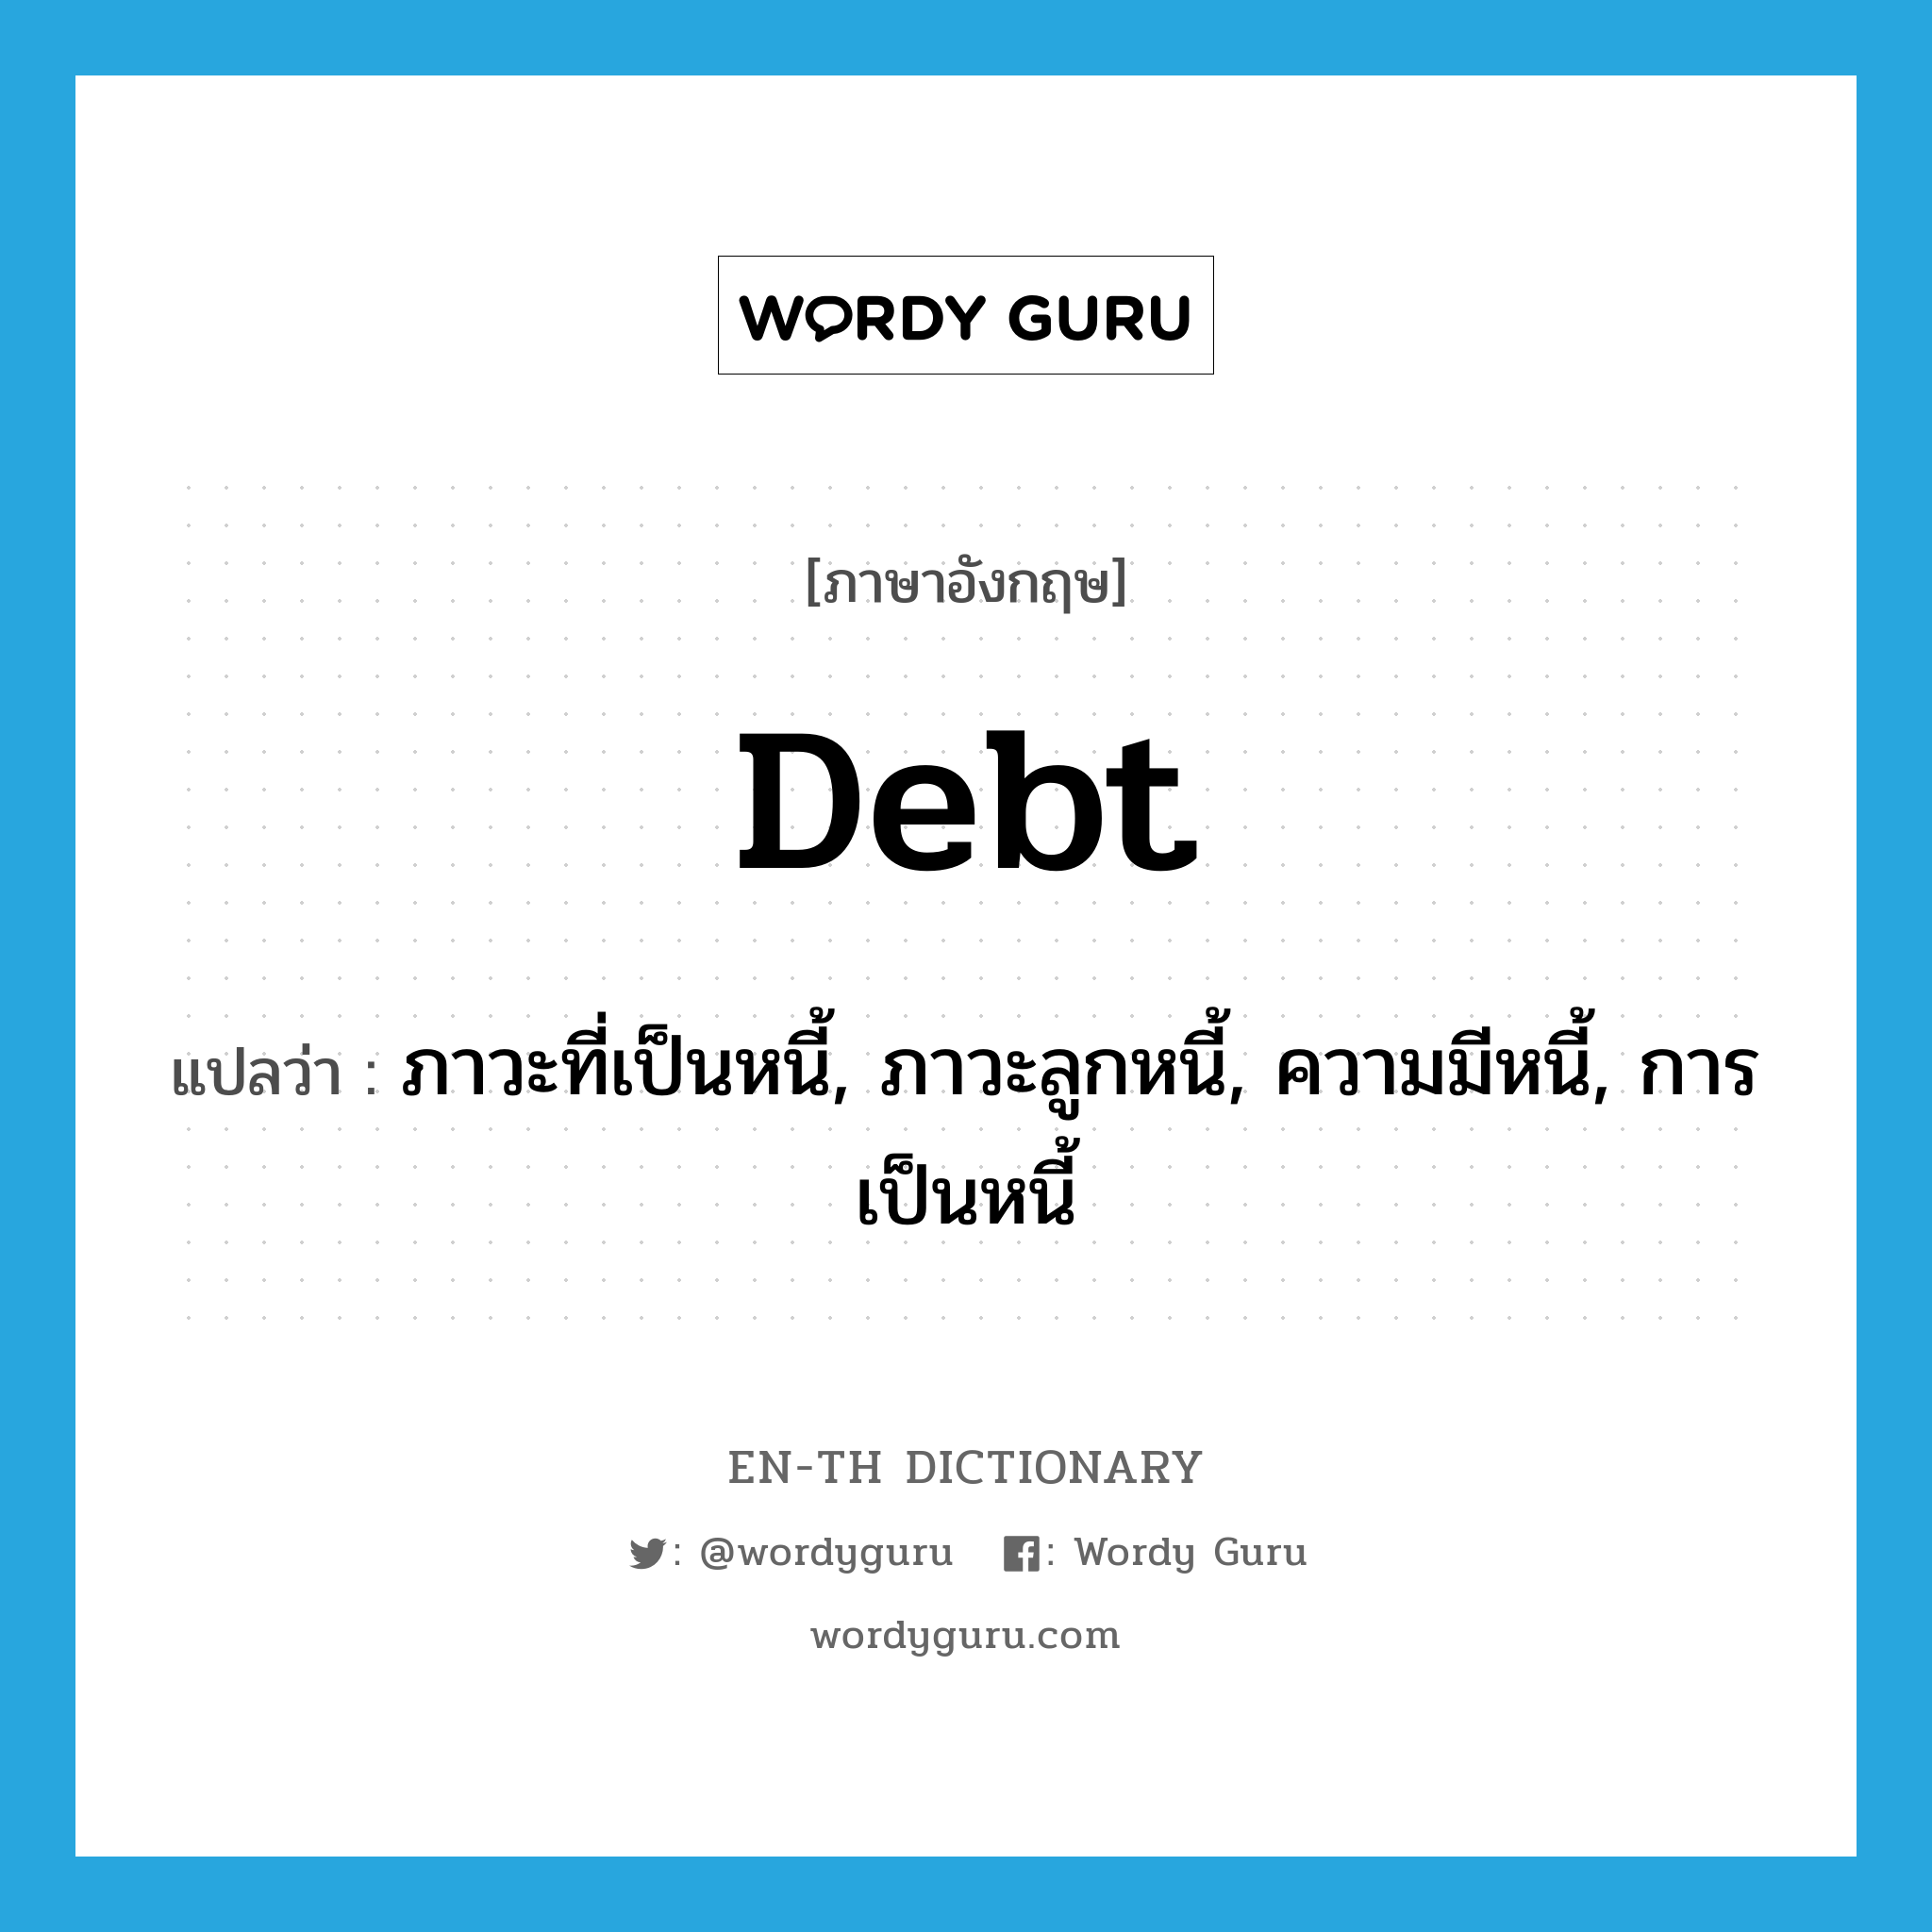 debt แปลว่า?, คำศัพท์ภาษาอังกฤษ debt แปลว่า ภาวะที่เป็นหนี้, ภาวะลูกหนี้, ความมีหนี้, การเป็นหนี้ ประเภท N หมวด N